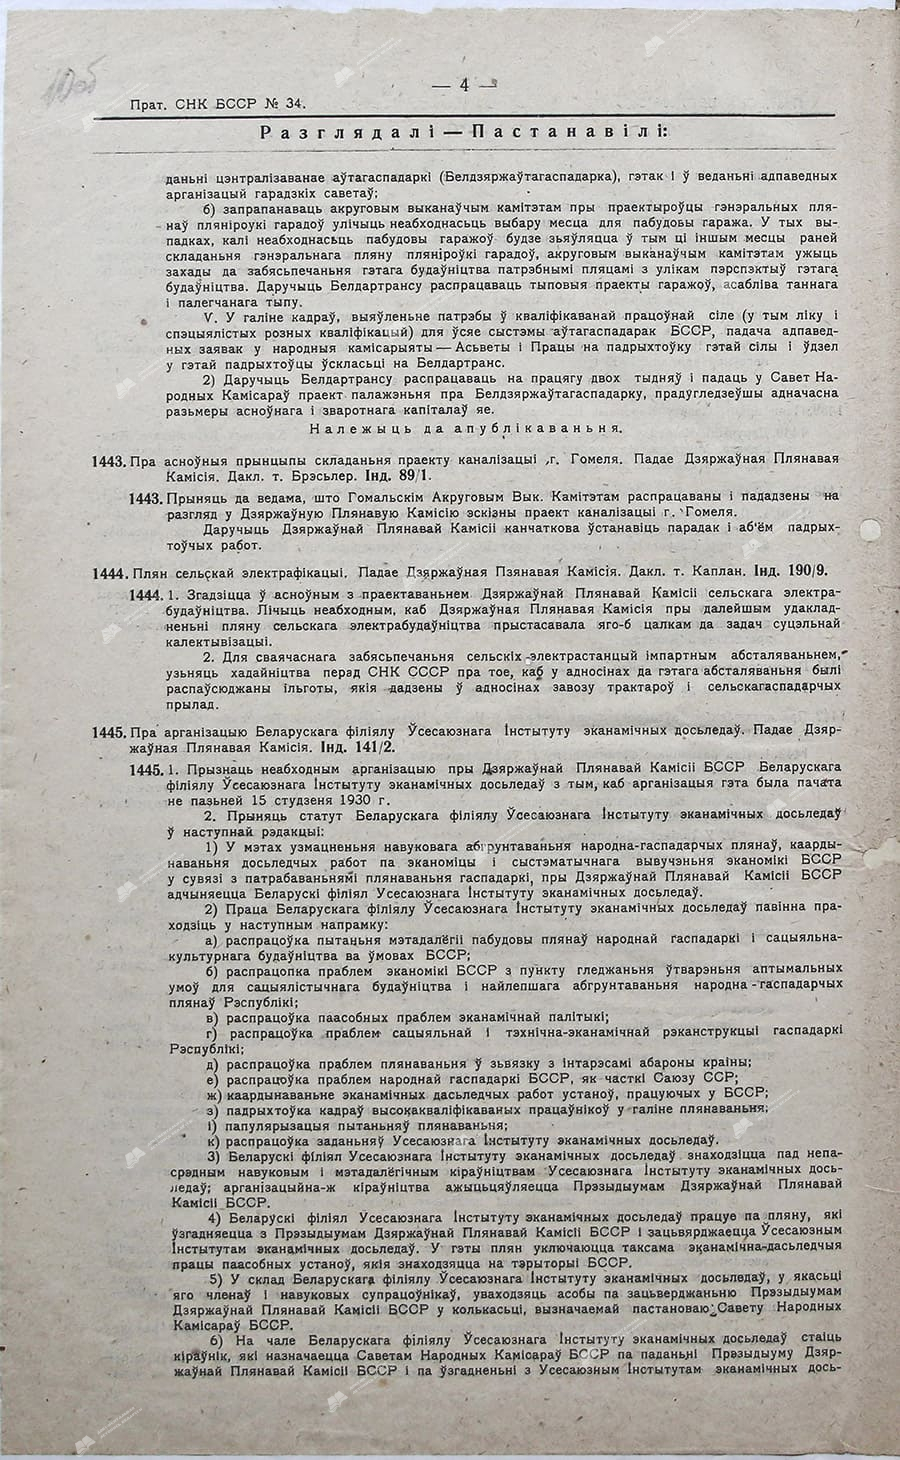 Протокол №34 заседания Совета Народных Комиссаров Белорусской ССР от 12 января 1930 г.-стр. 1